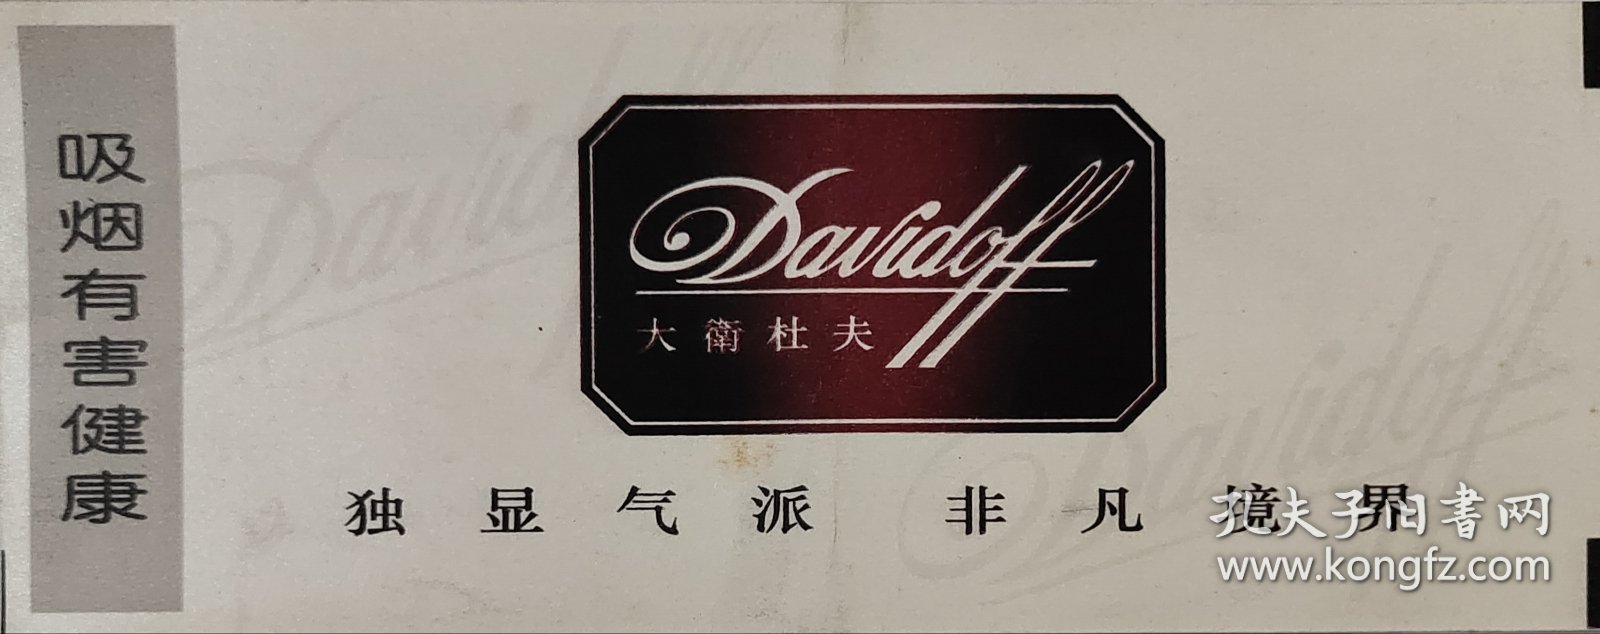 大卫杜夫香烟广告登机牌